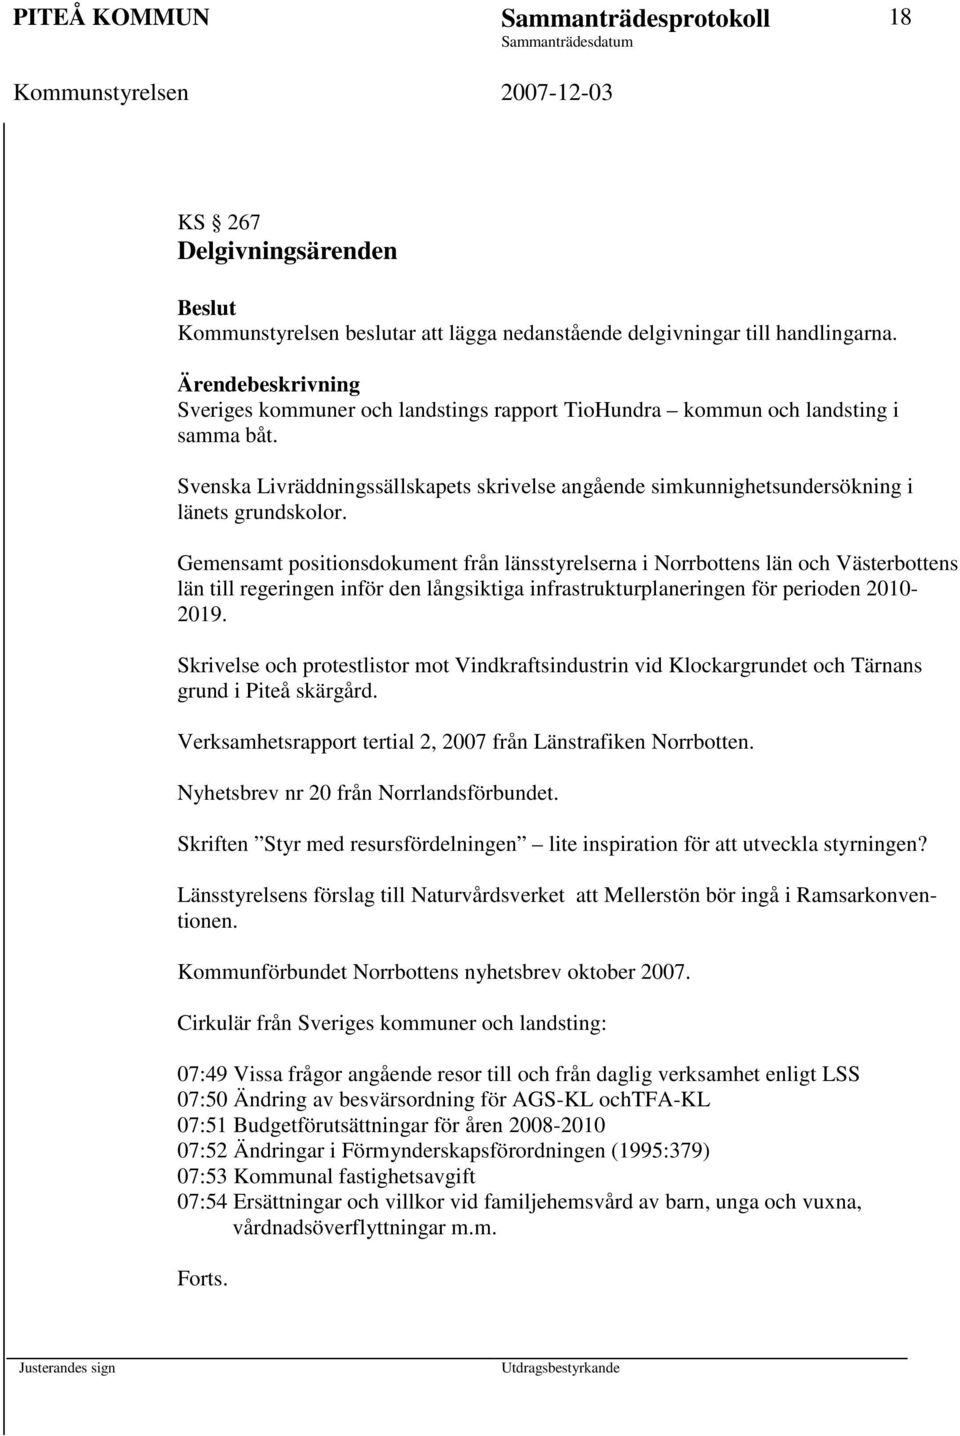 Gemensamt positionsdokument från länsstyrelserna i Norrbottens län och Västerbottens län till regeringen inför den långsiktiga infrastrukturplaneringen för perioden 2010-2019.